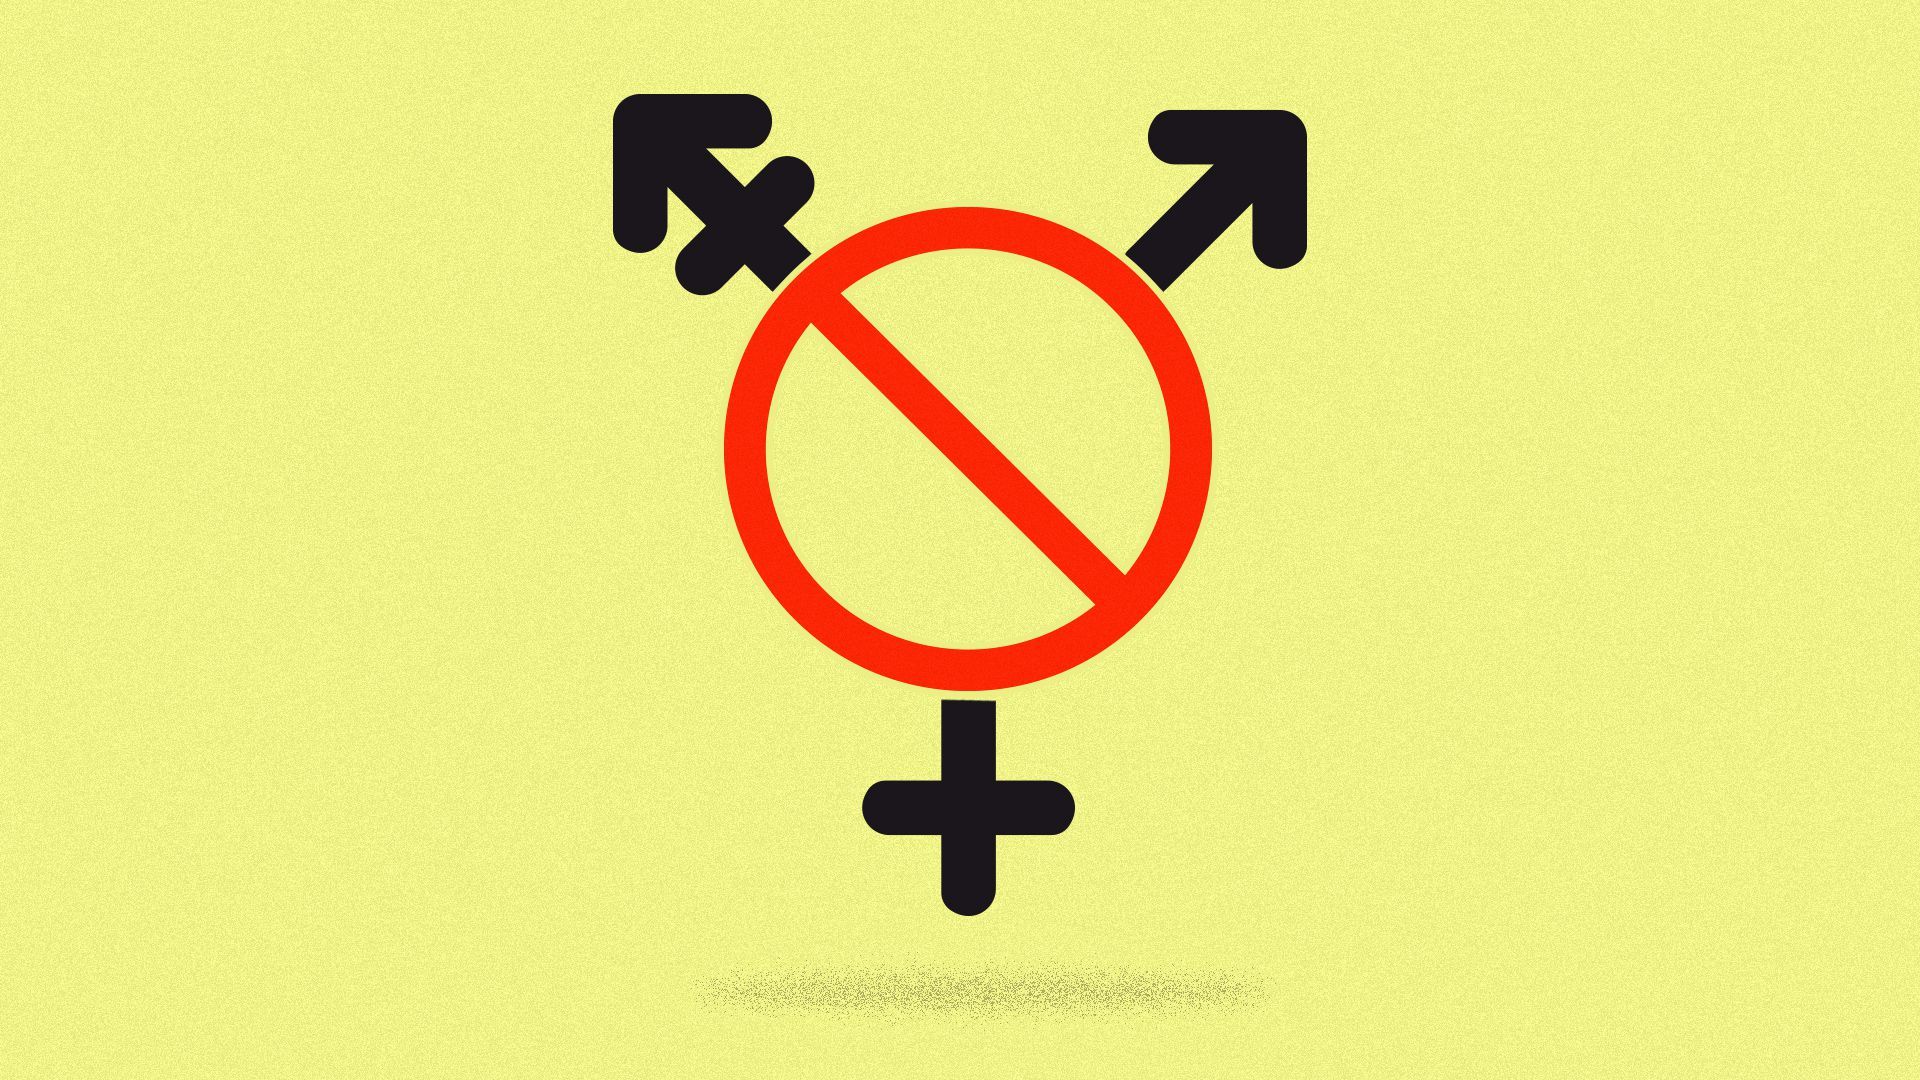 An illustration of a transgender gender sign